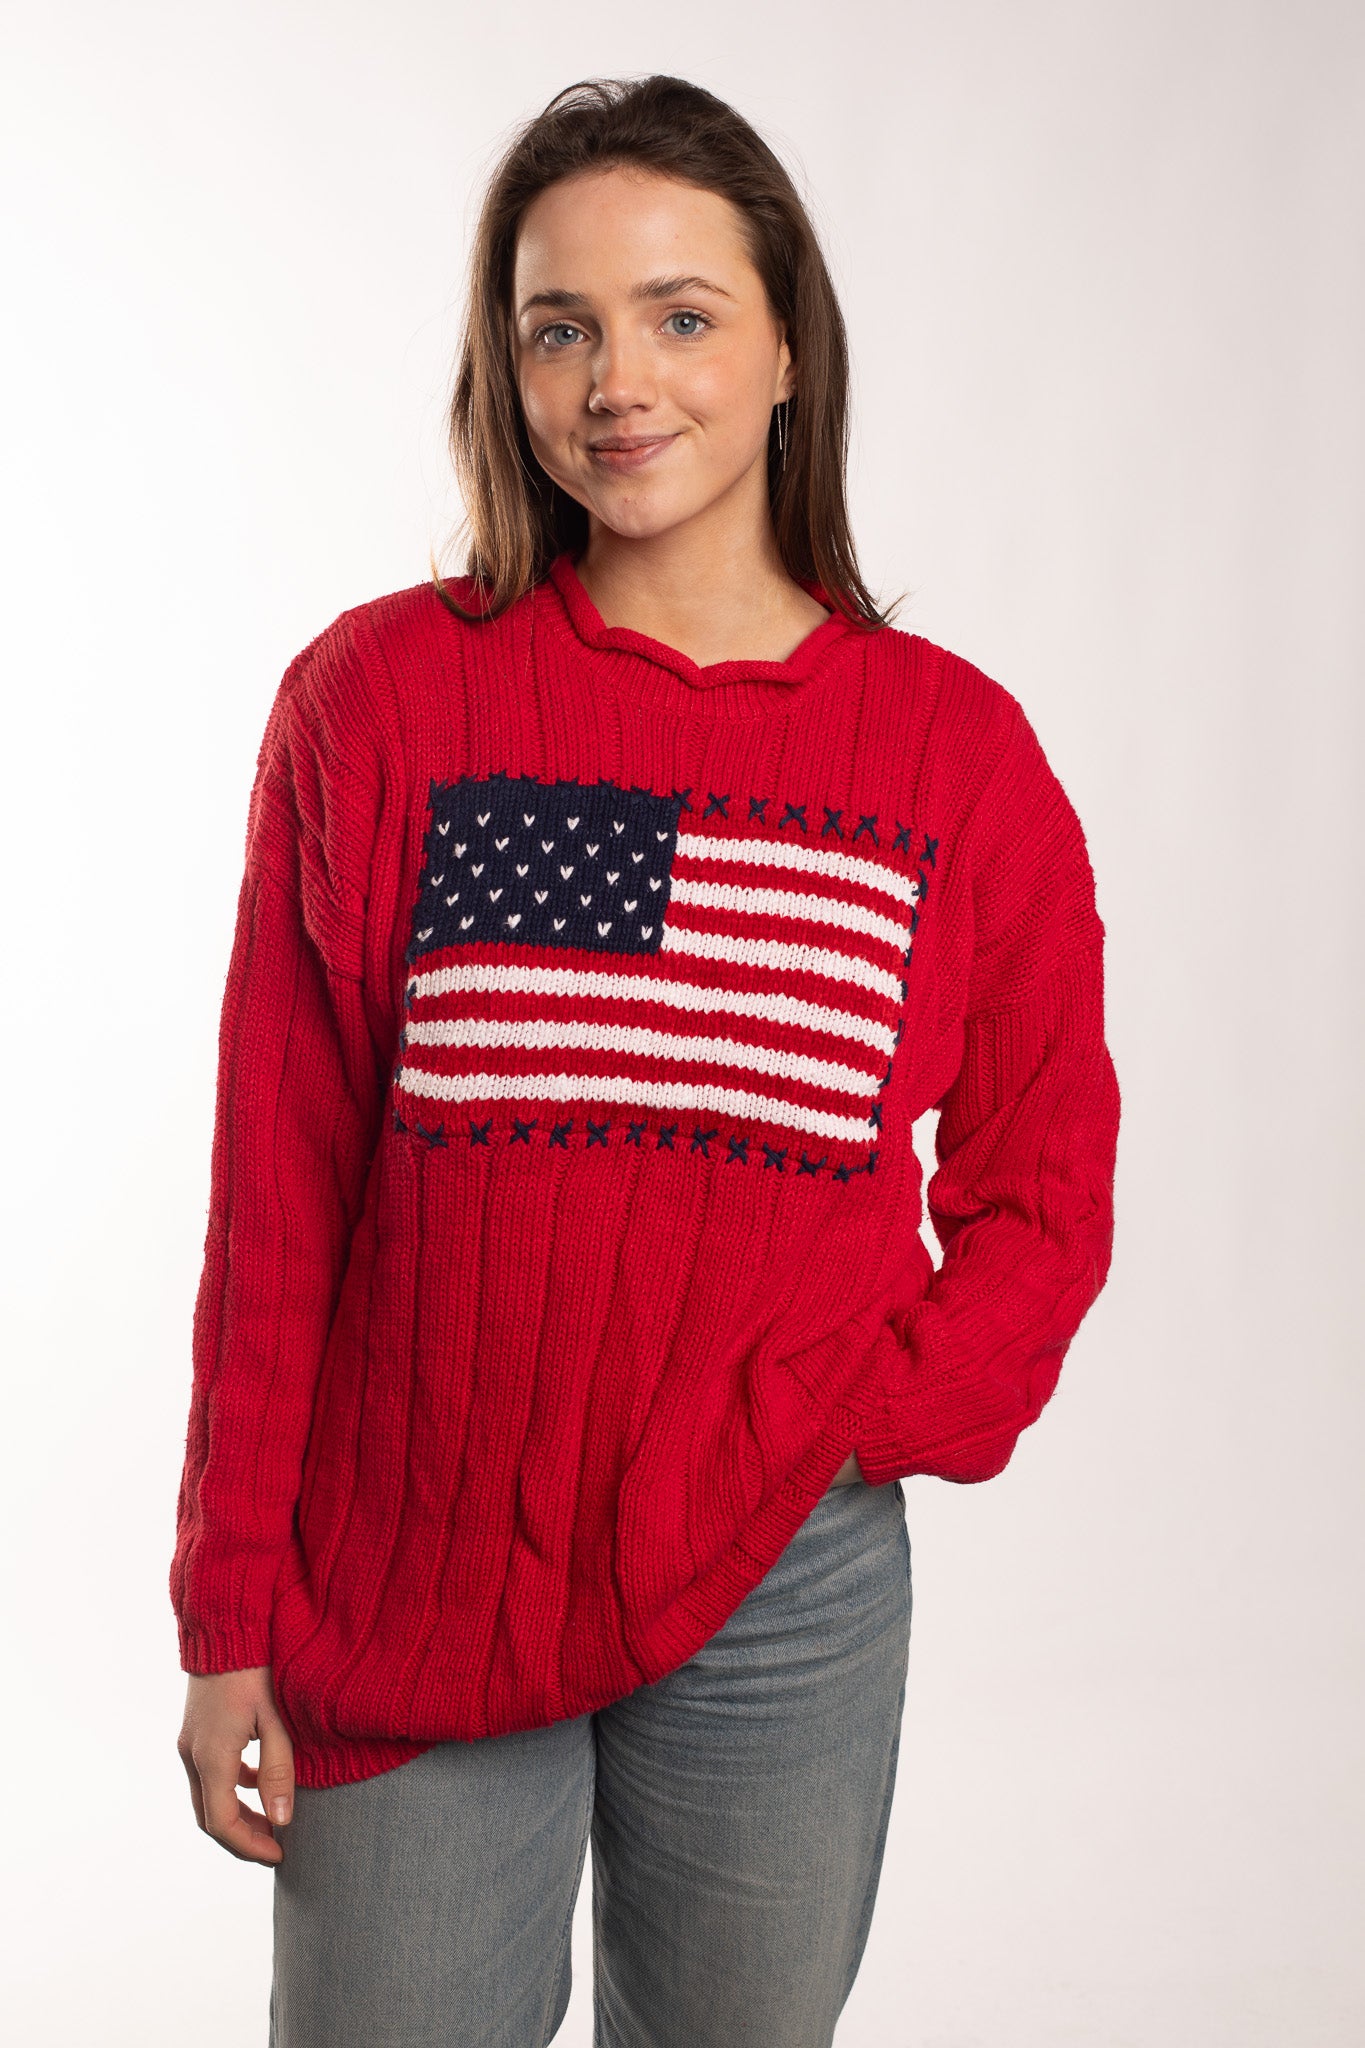 USA Flag - Sweatshirt (L)